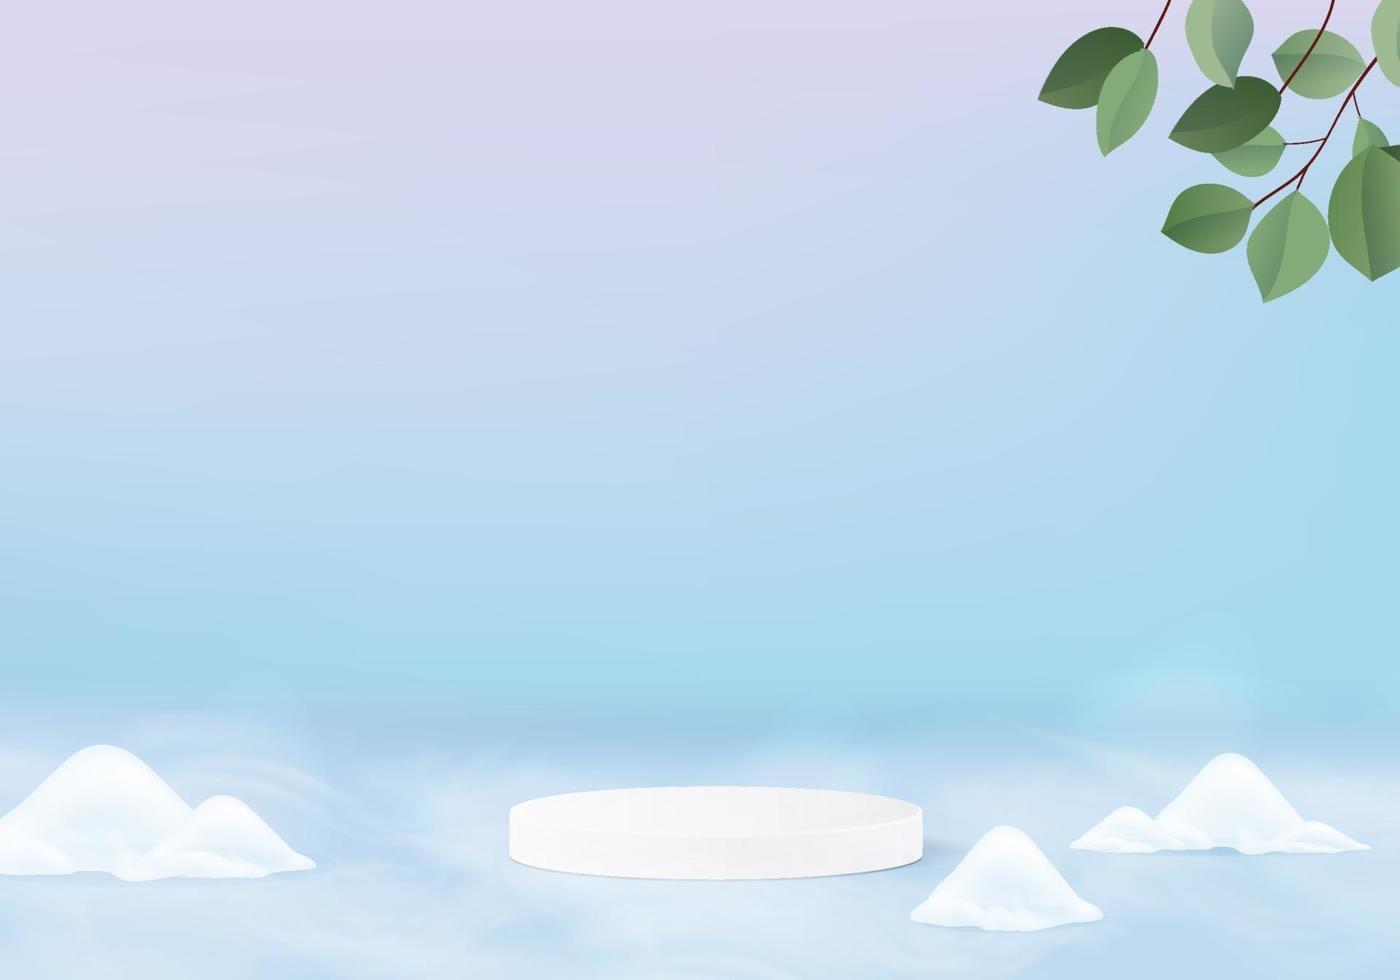 cayendo navidad nieve brillante escena mínima con plataforma geométrica. vacaciones de invierno hielo nieve fondo vector render 3d con podio. Stand para mostrar productos. escaparate de escenario en 3d azul pastel